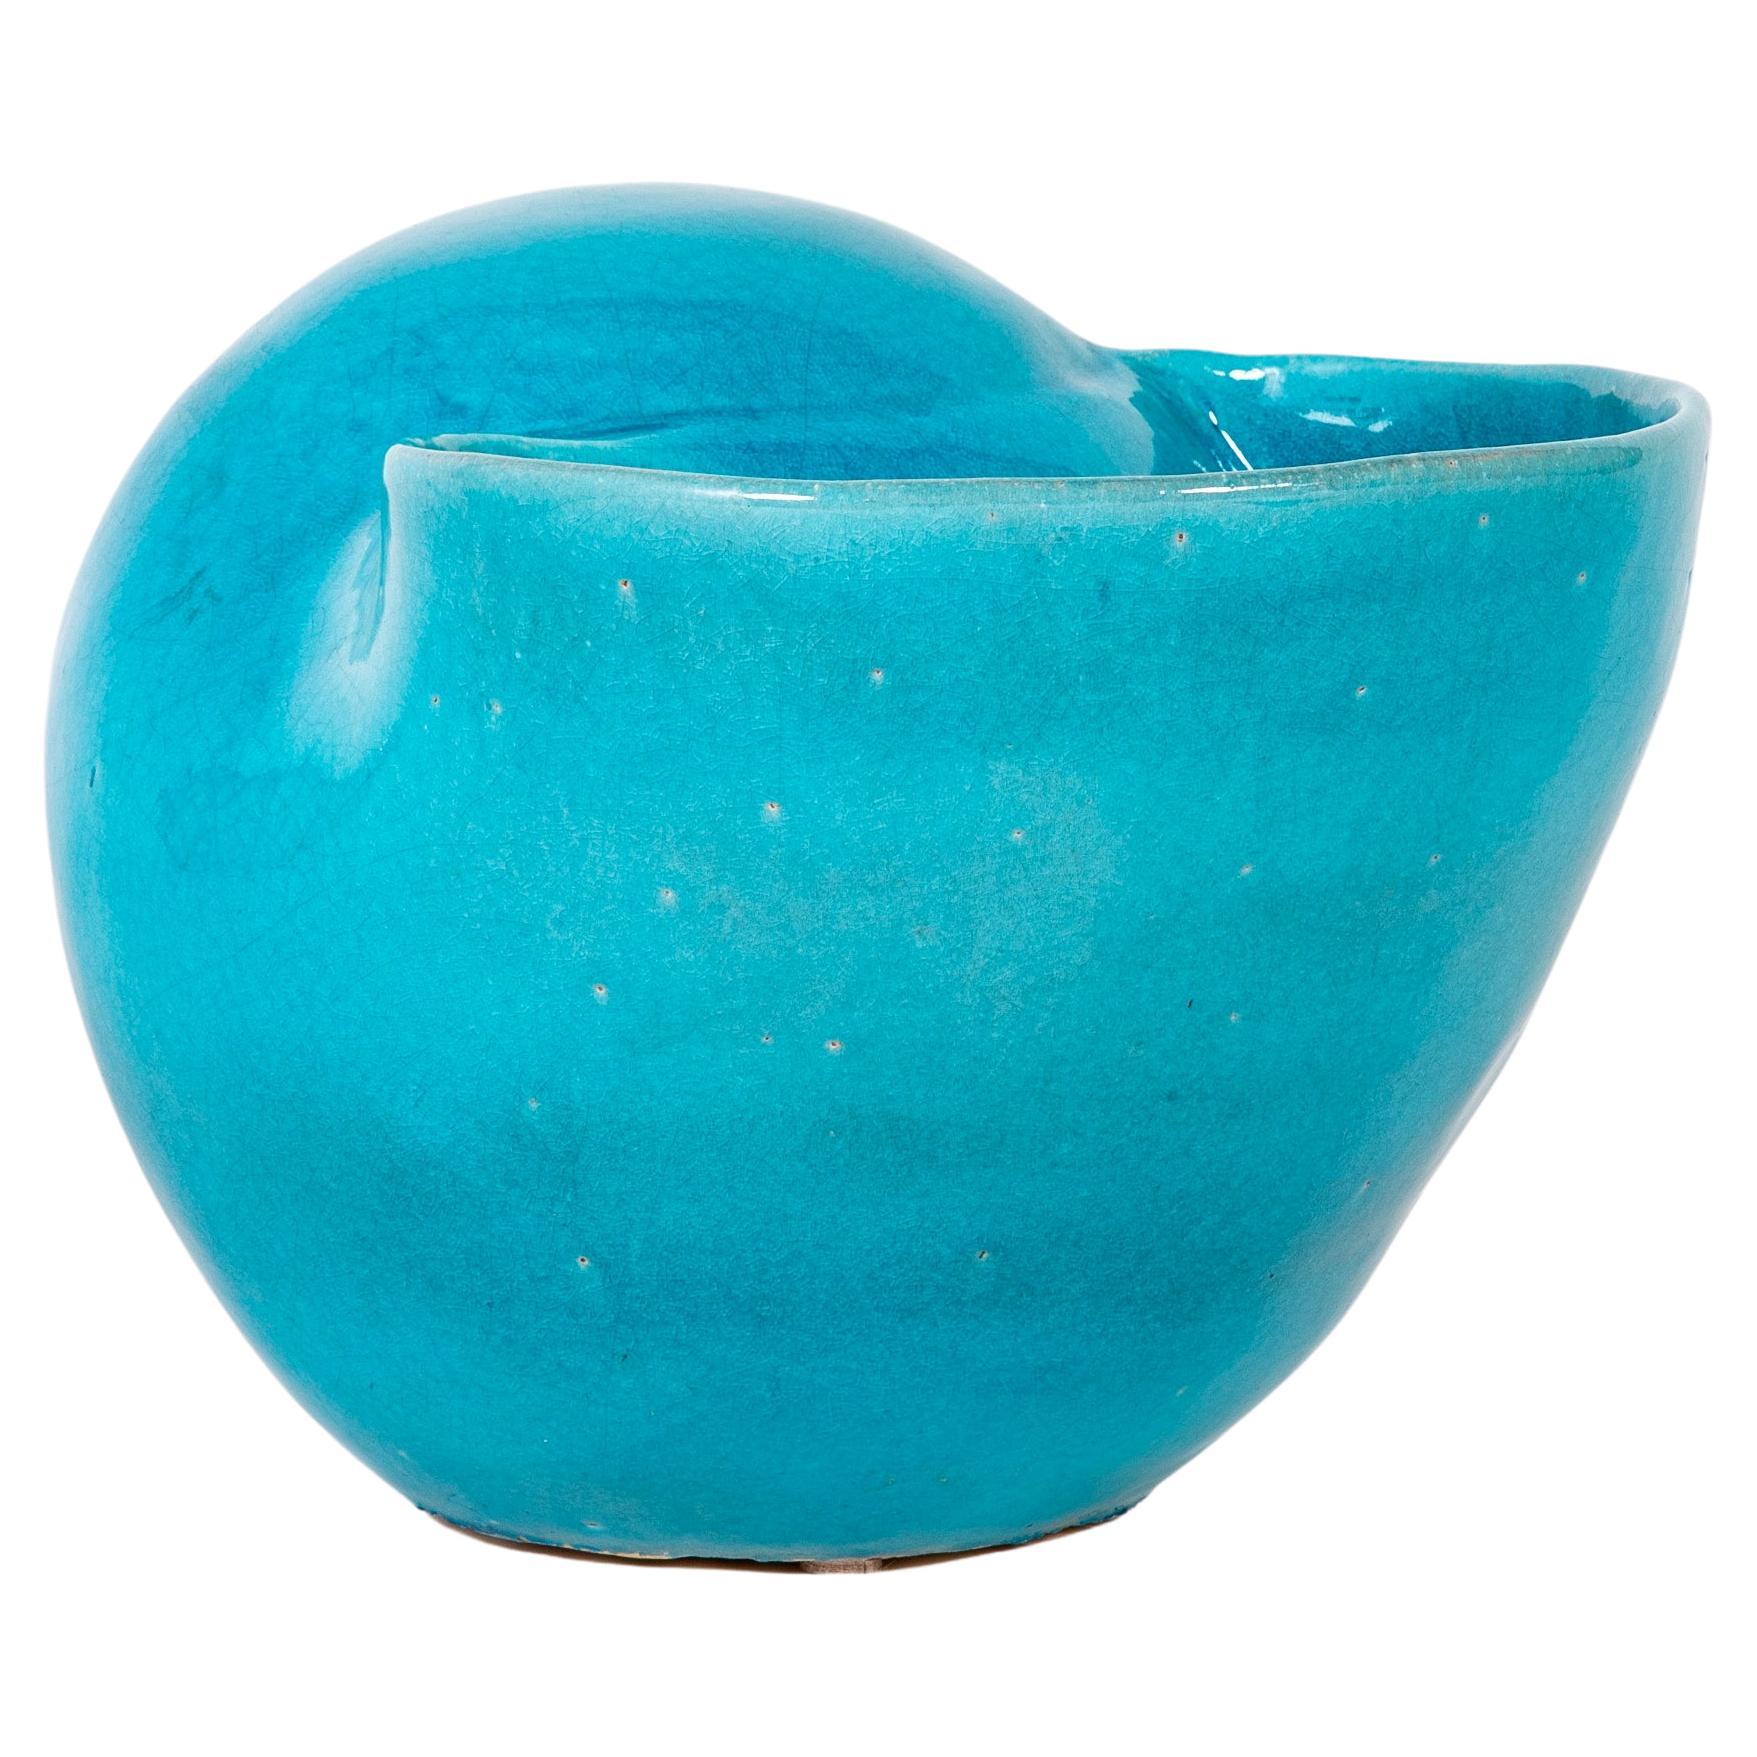 Atemberaubende großformatige Muschel türkisblau glasierte Keramikvase. Die wunderbare Skulptur eignet sich auch hervorragend als Vase oder Pflanzgefäß. Das Blau leuchtet einfach und die Form ist sehr ansprechend. Mit dem chinesischen Symbol für